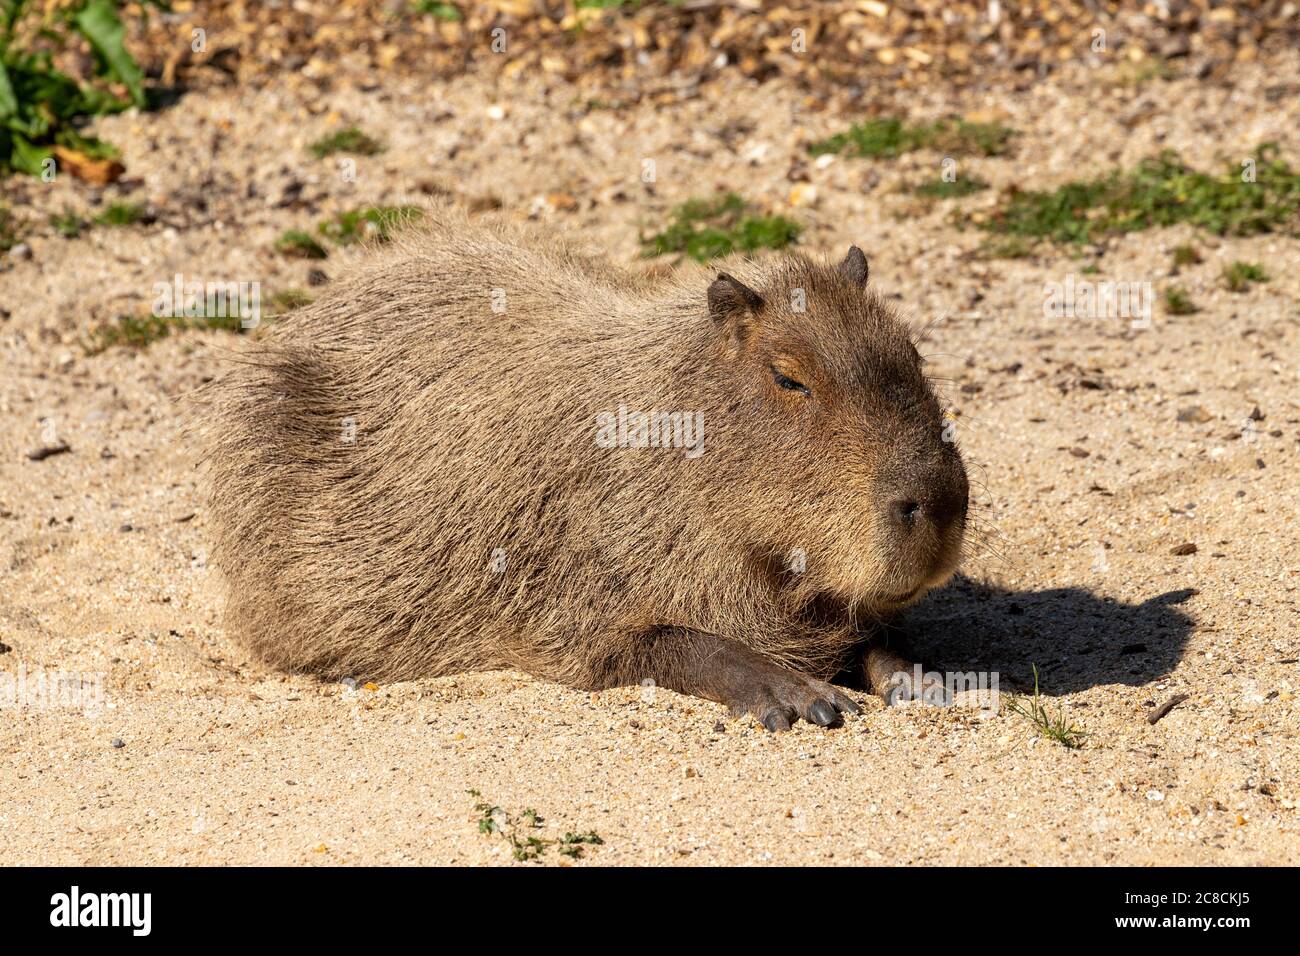 A Capybara in the hot sun Stock Photo